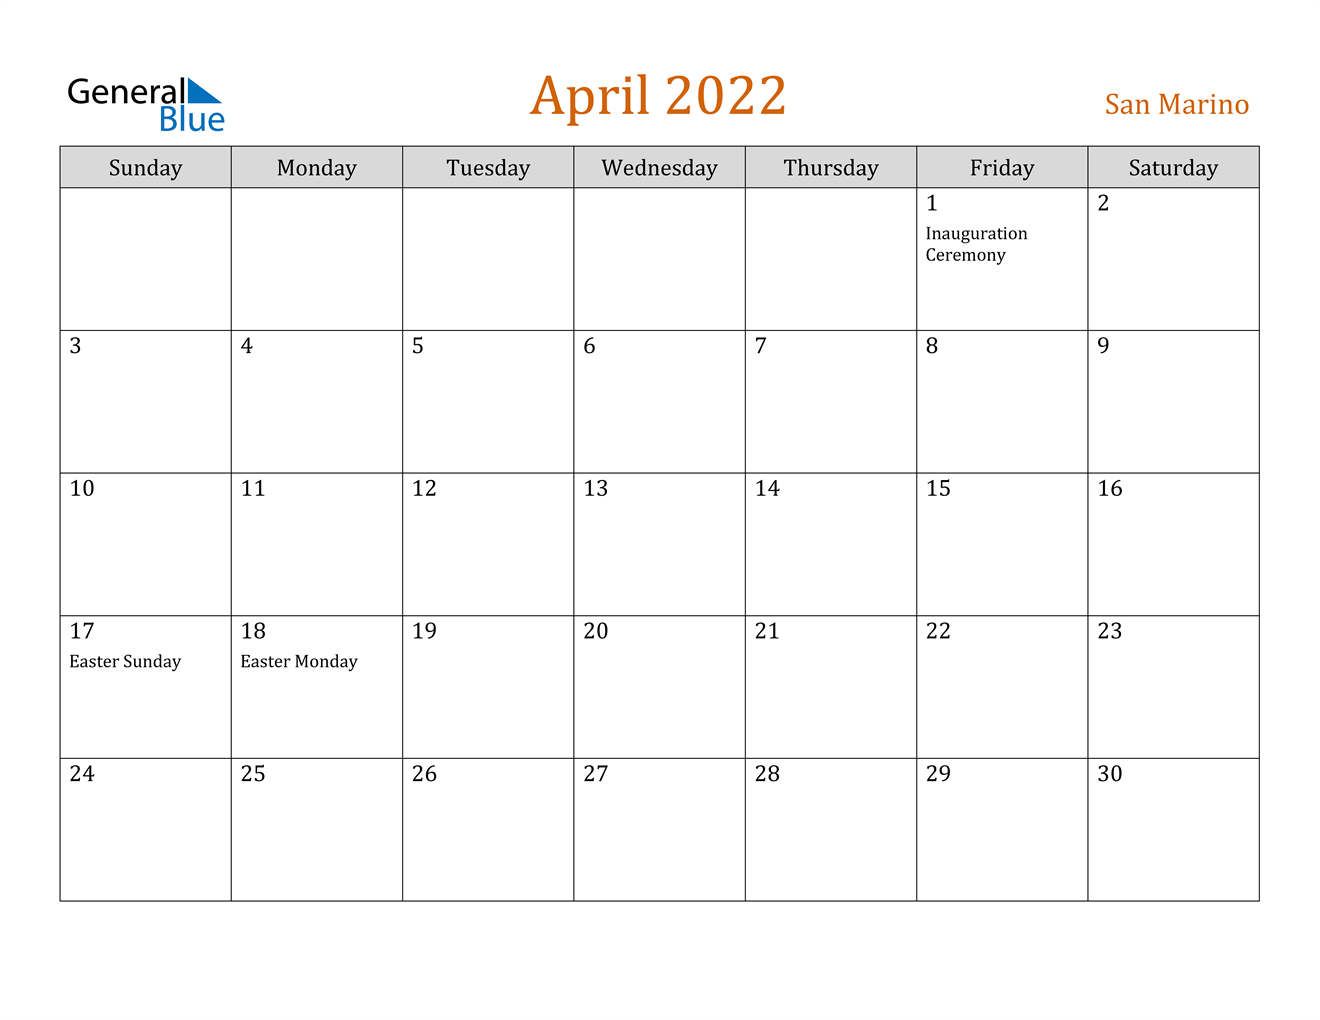 April 2022 Calendar - San Marino